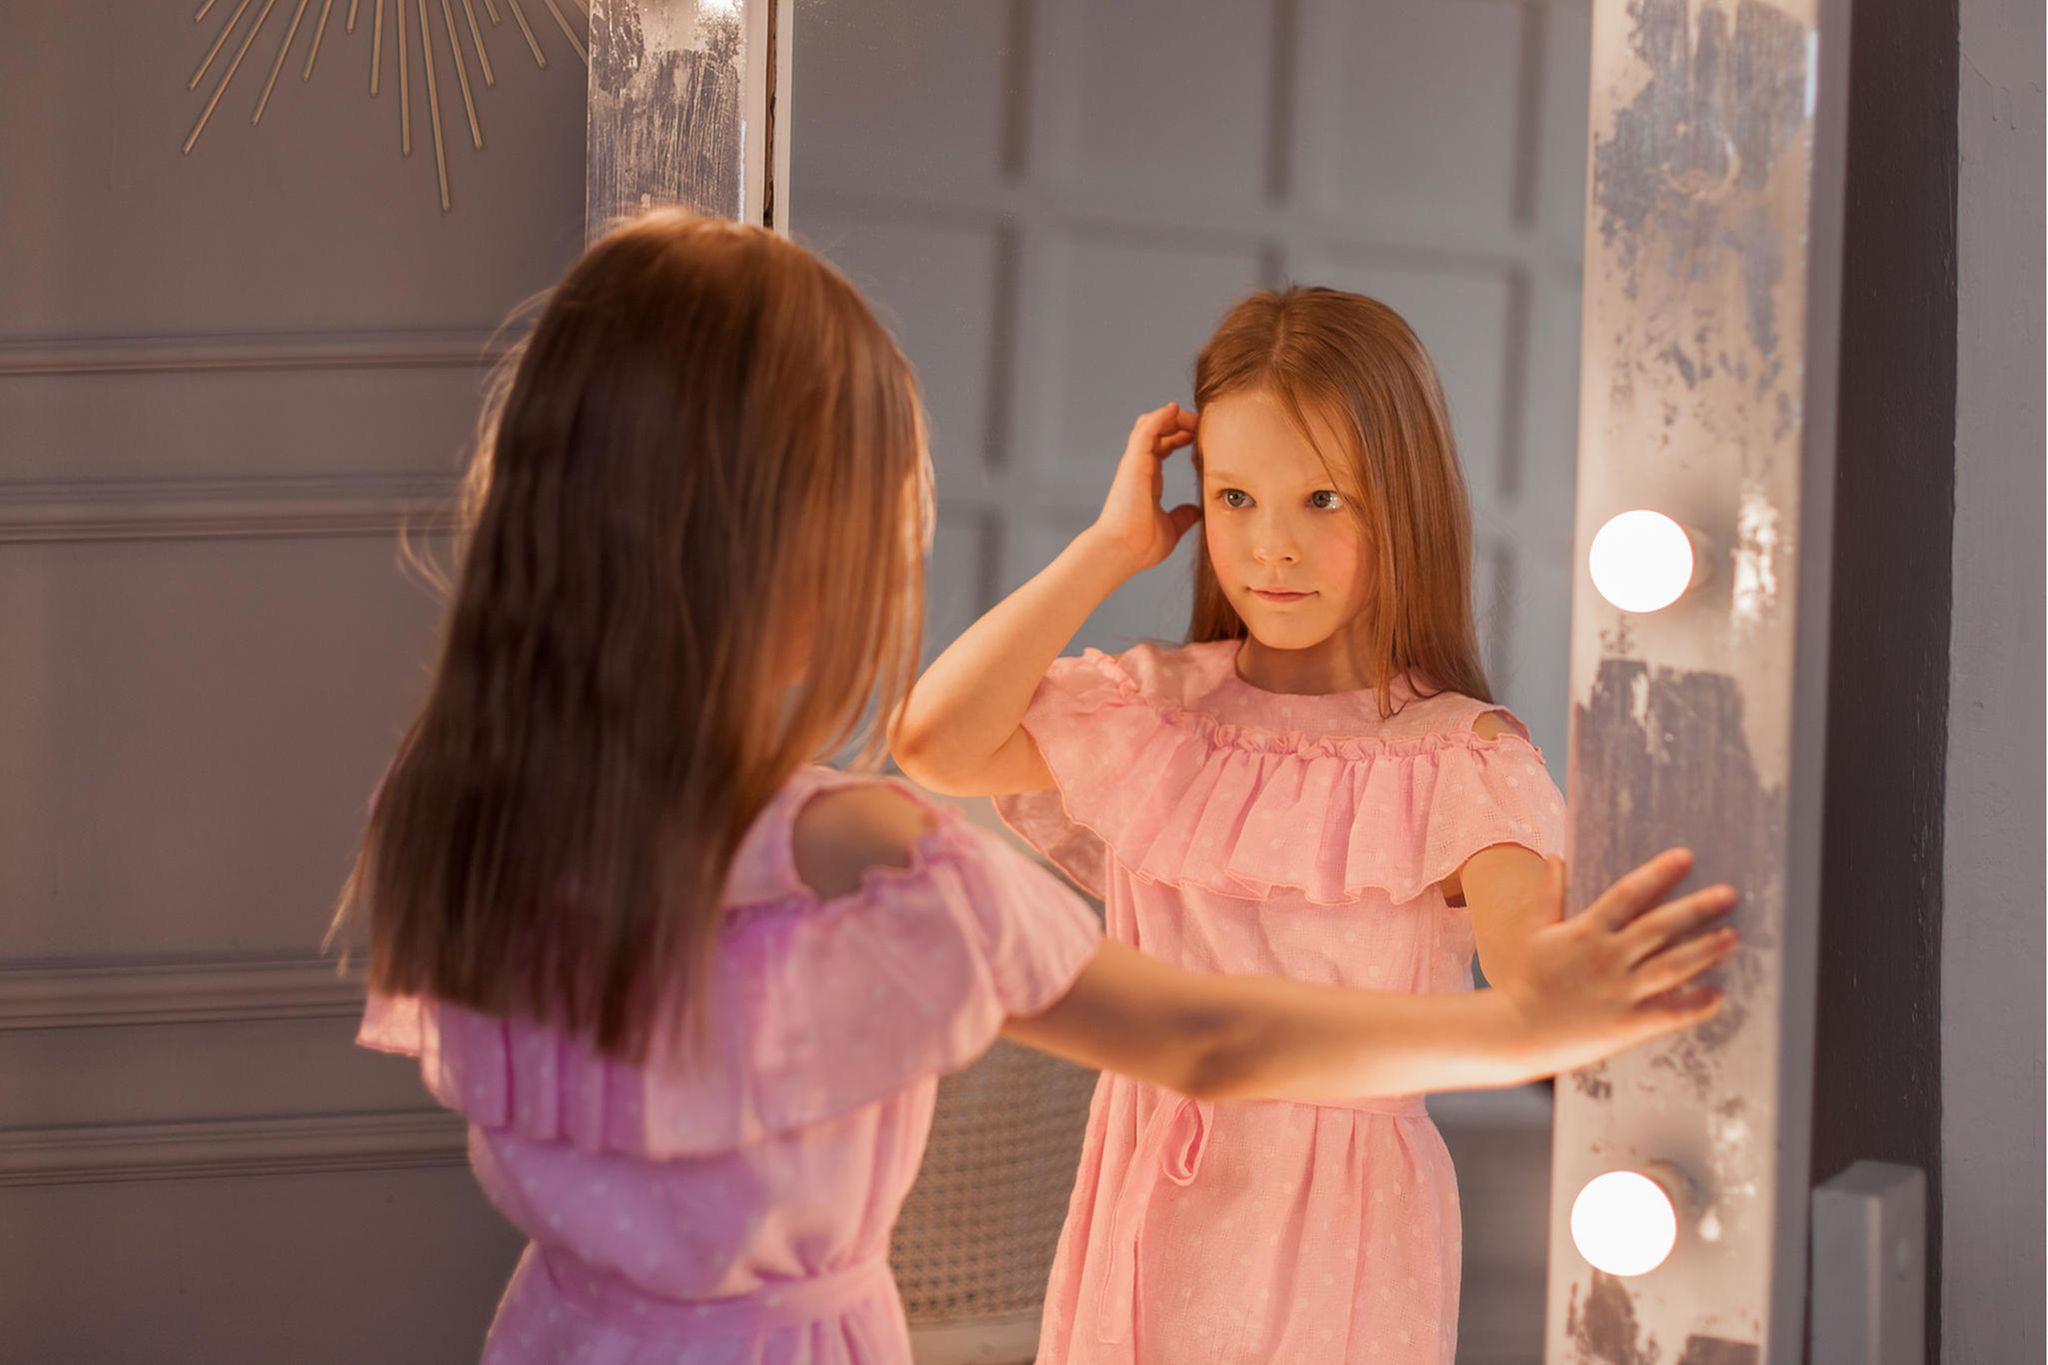 Mein Kind vor dem Spiegel: Wie vermitteln wir ein gesundes Körperbild?